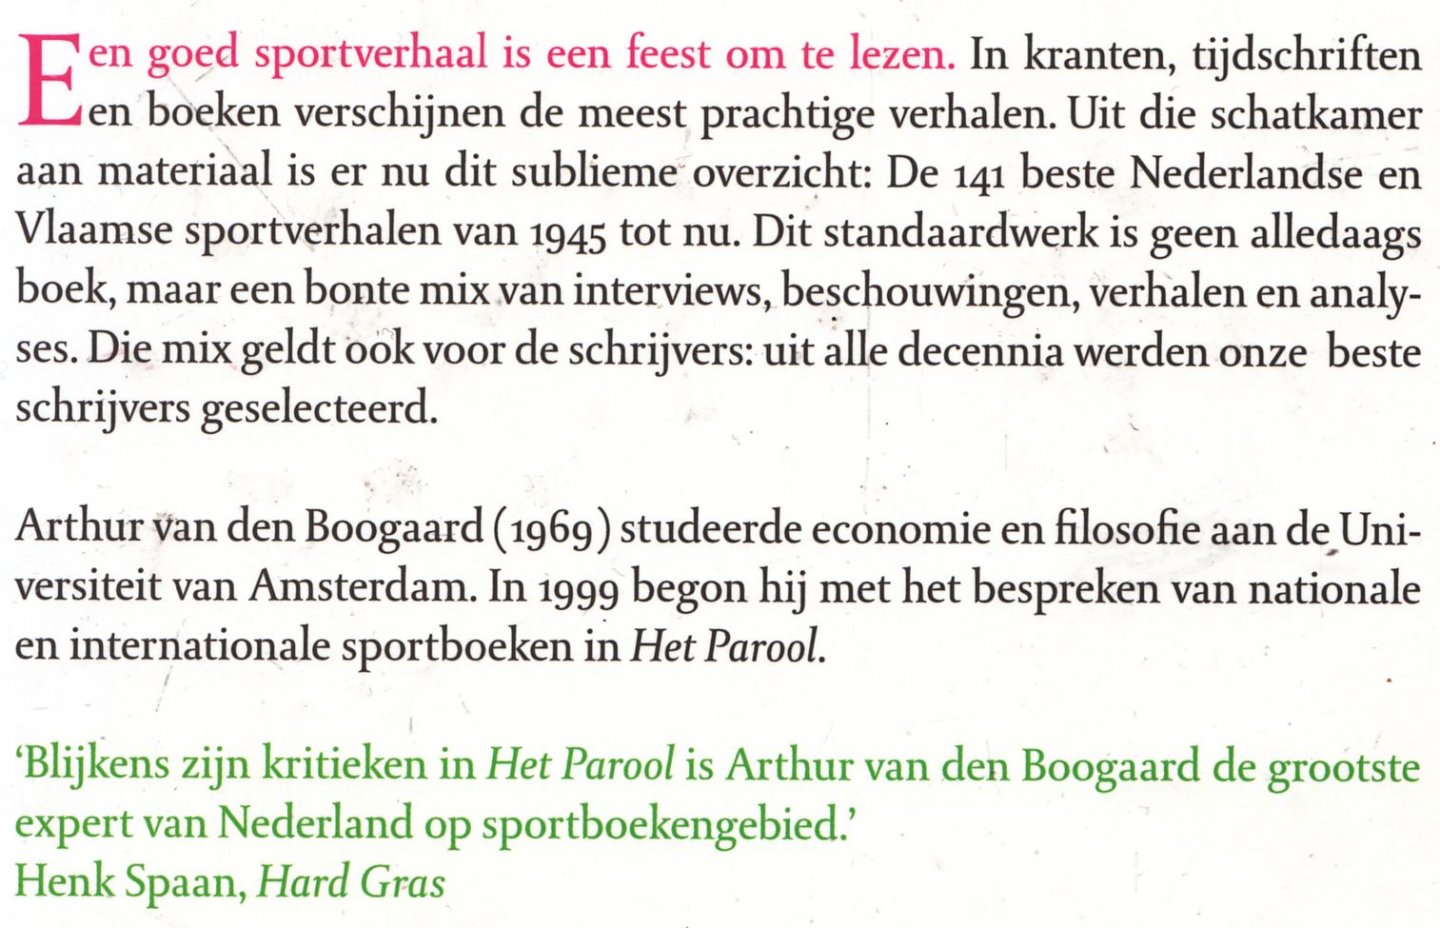 Boogaard, A. van den - Sport. De 141 beste Nederlandse en Vlaamse sportverhalen van 1945 tot nu.